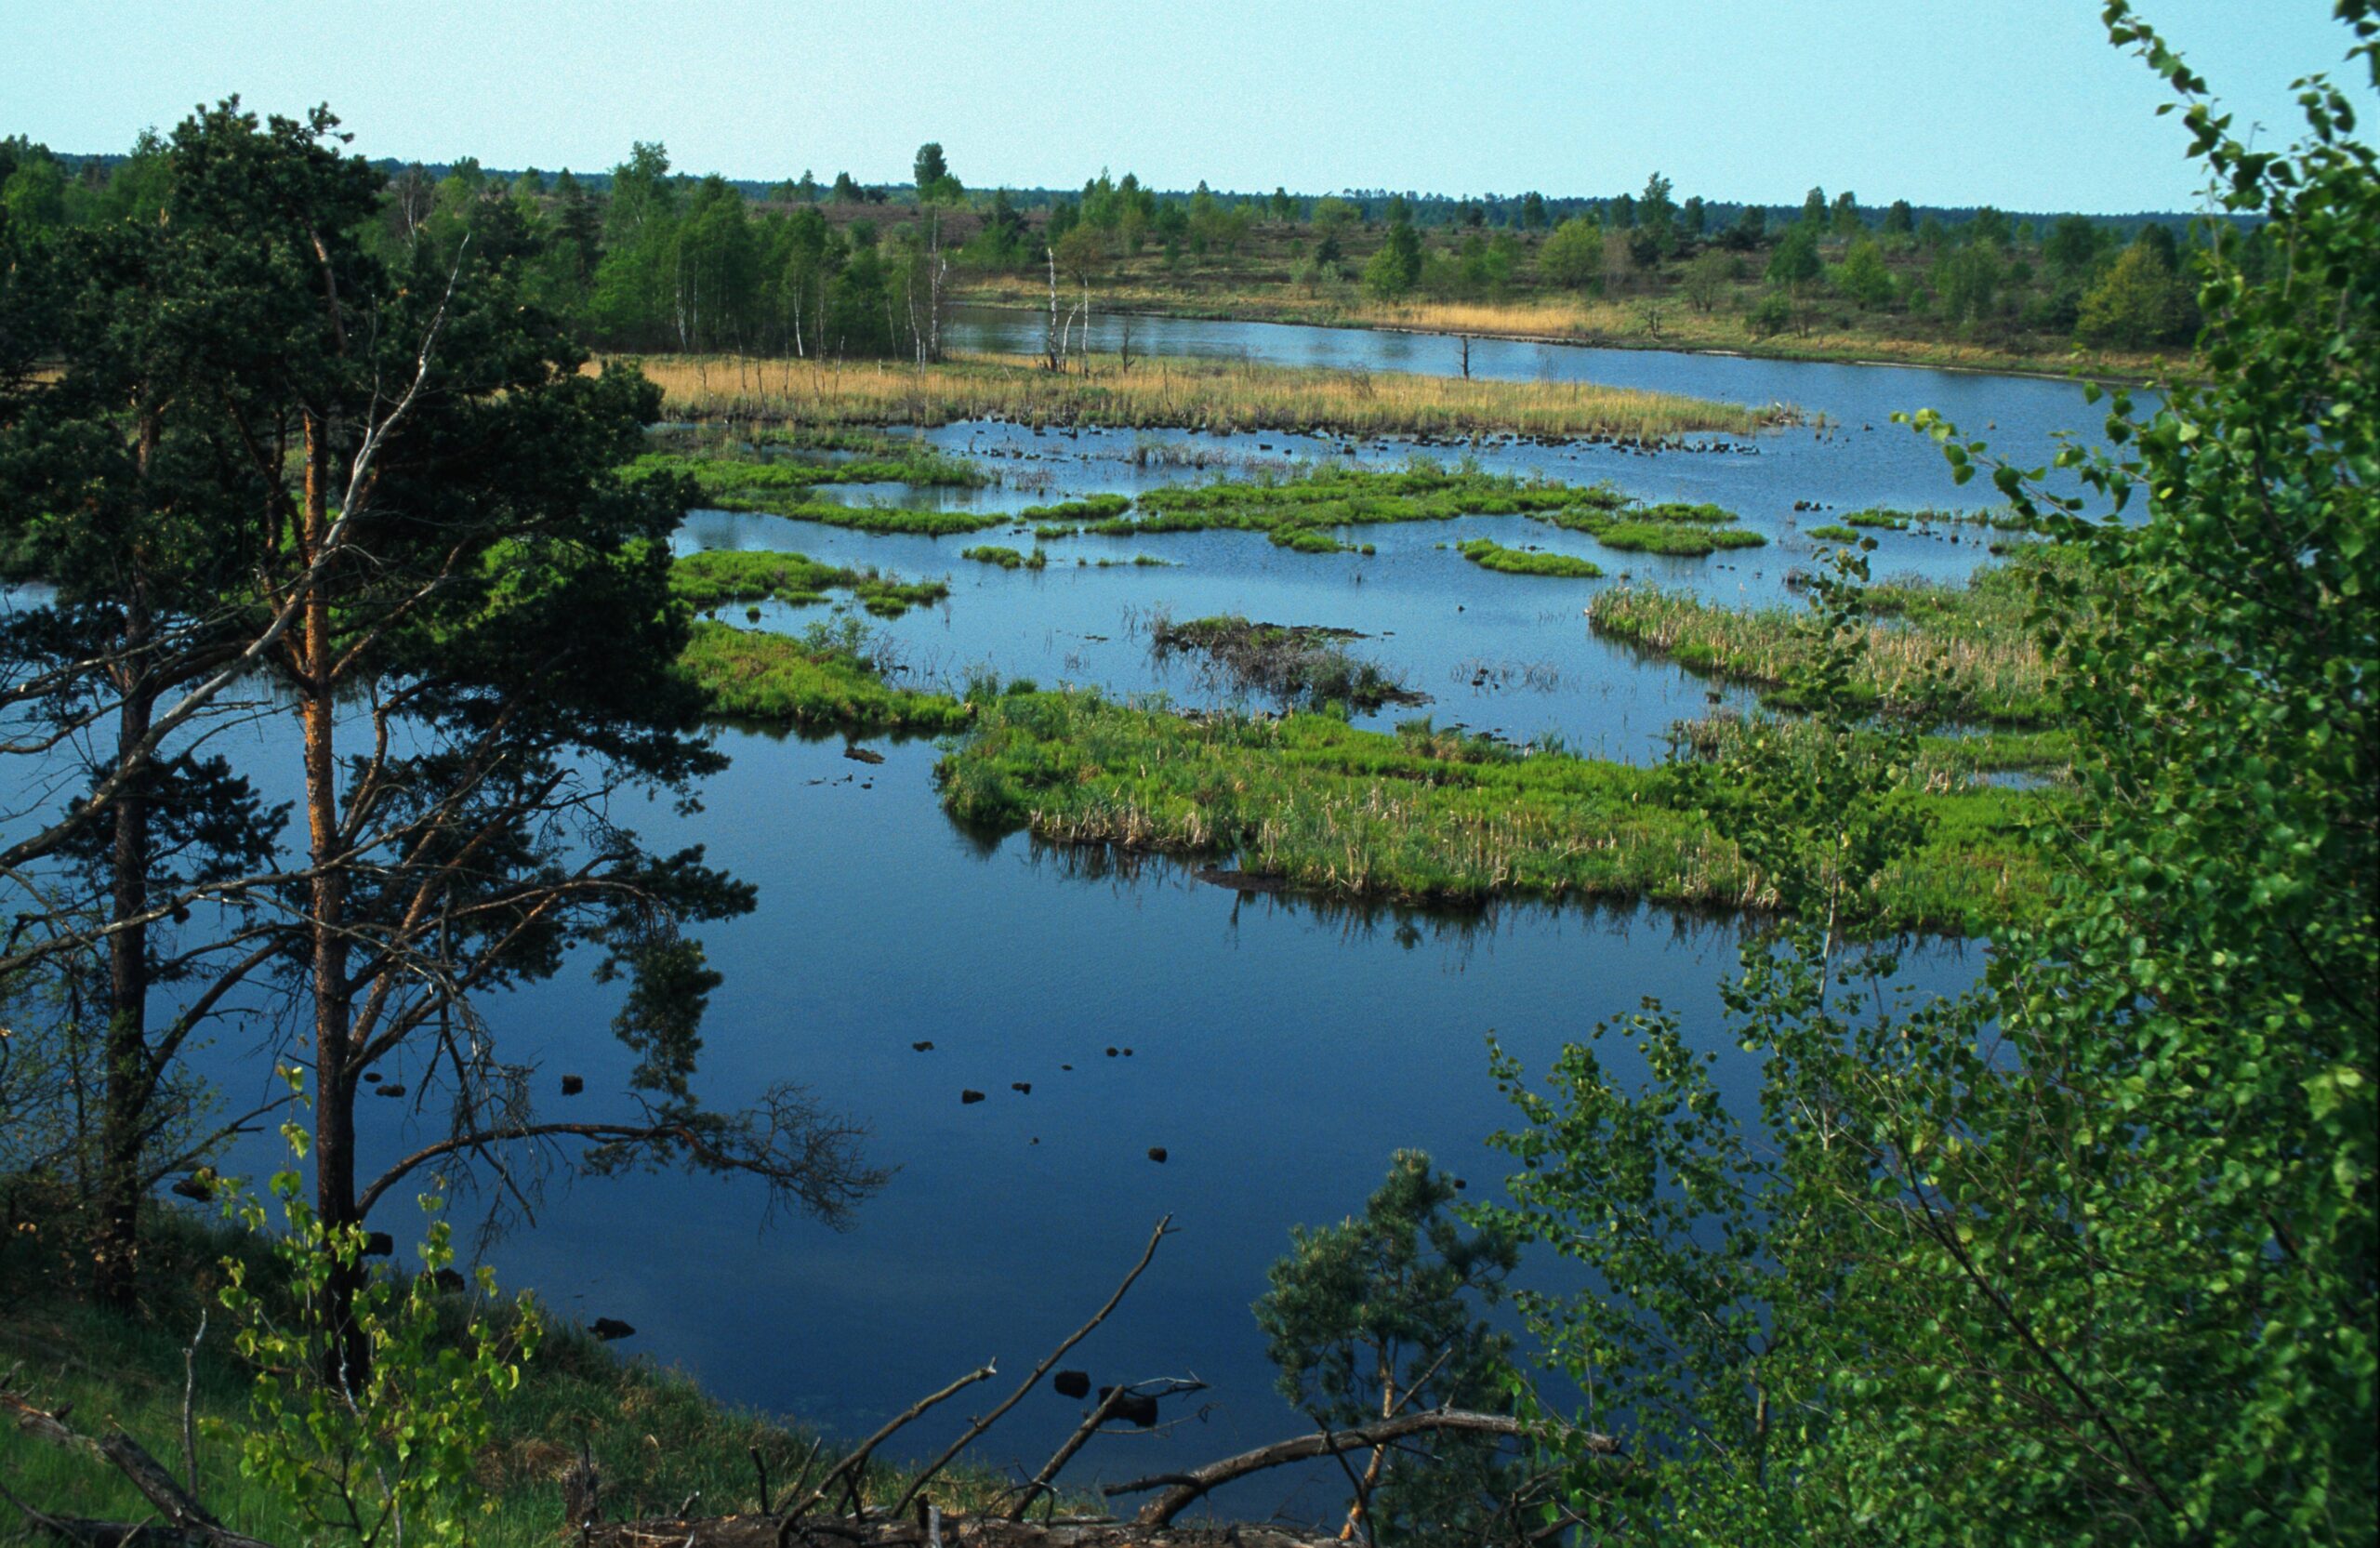 Bild der Tangersdorfer Heide: ein paar Bäume im Vordergrund, eine grün-blaue Sumpf-/Teichlandschaft im Hintergrund